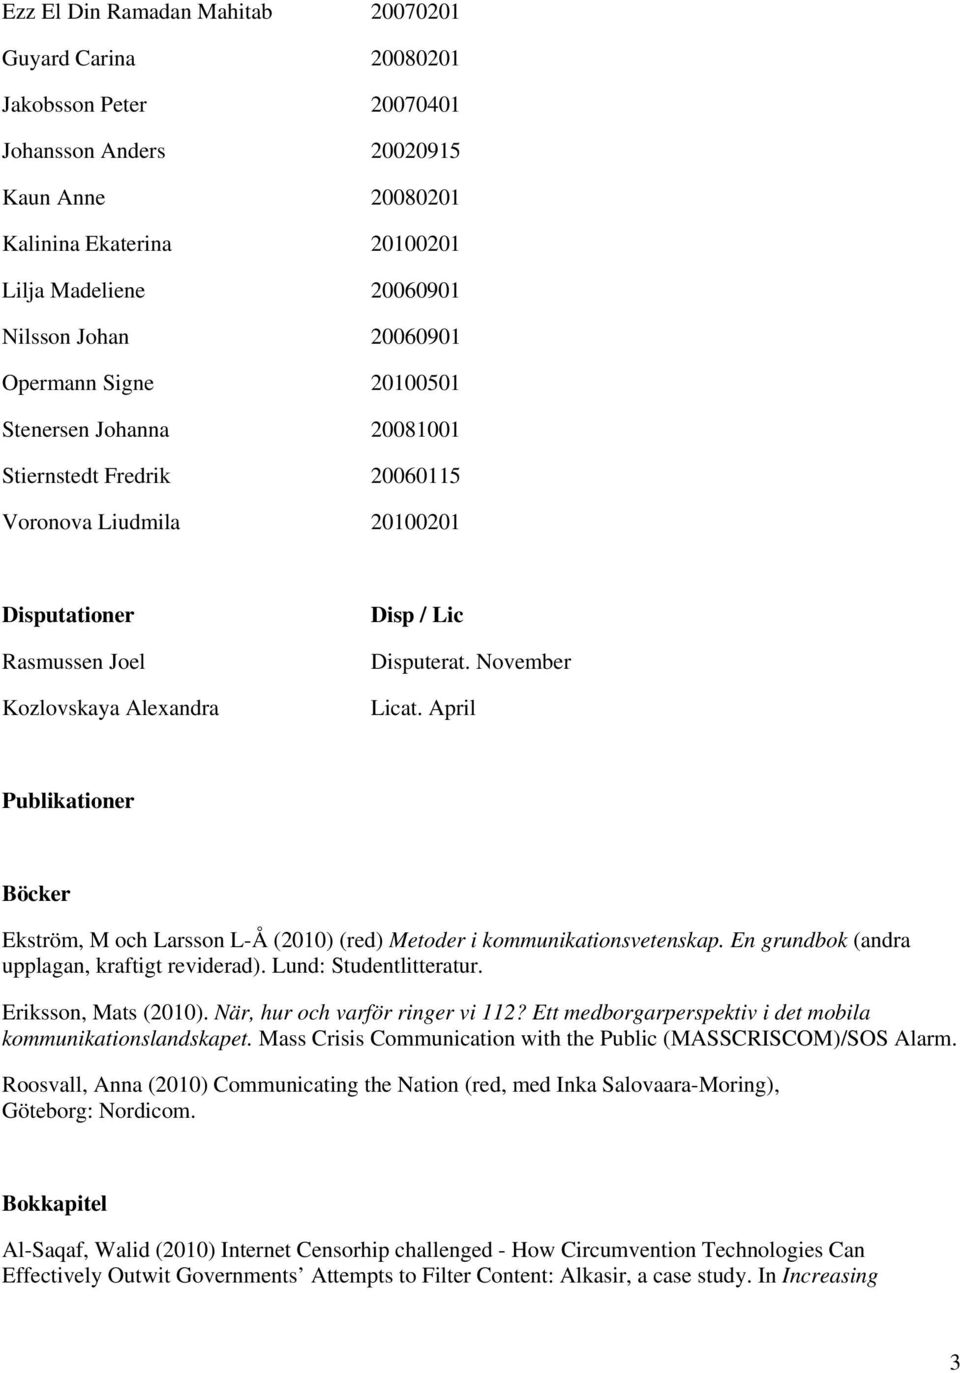 November Licat. April Publikationer Böcker Ekström, M och Larsson L-Å (2010) (red) Metoder i kommunikationsvetenskap. En grundbok (andra upplagan, kraftigt reviderad). Lund: Studentlitteratur.